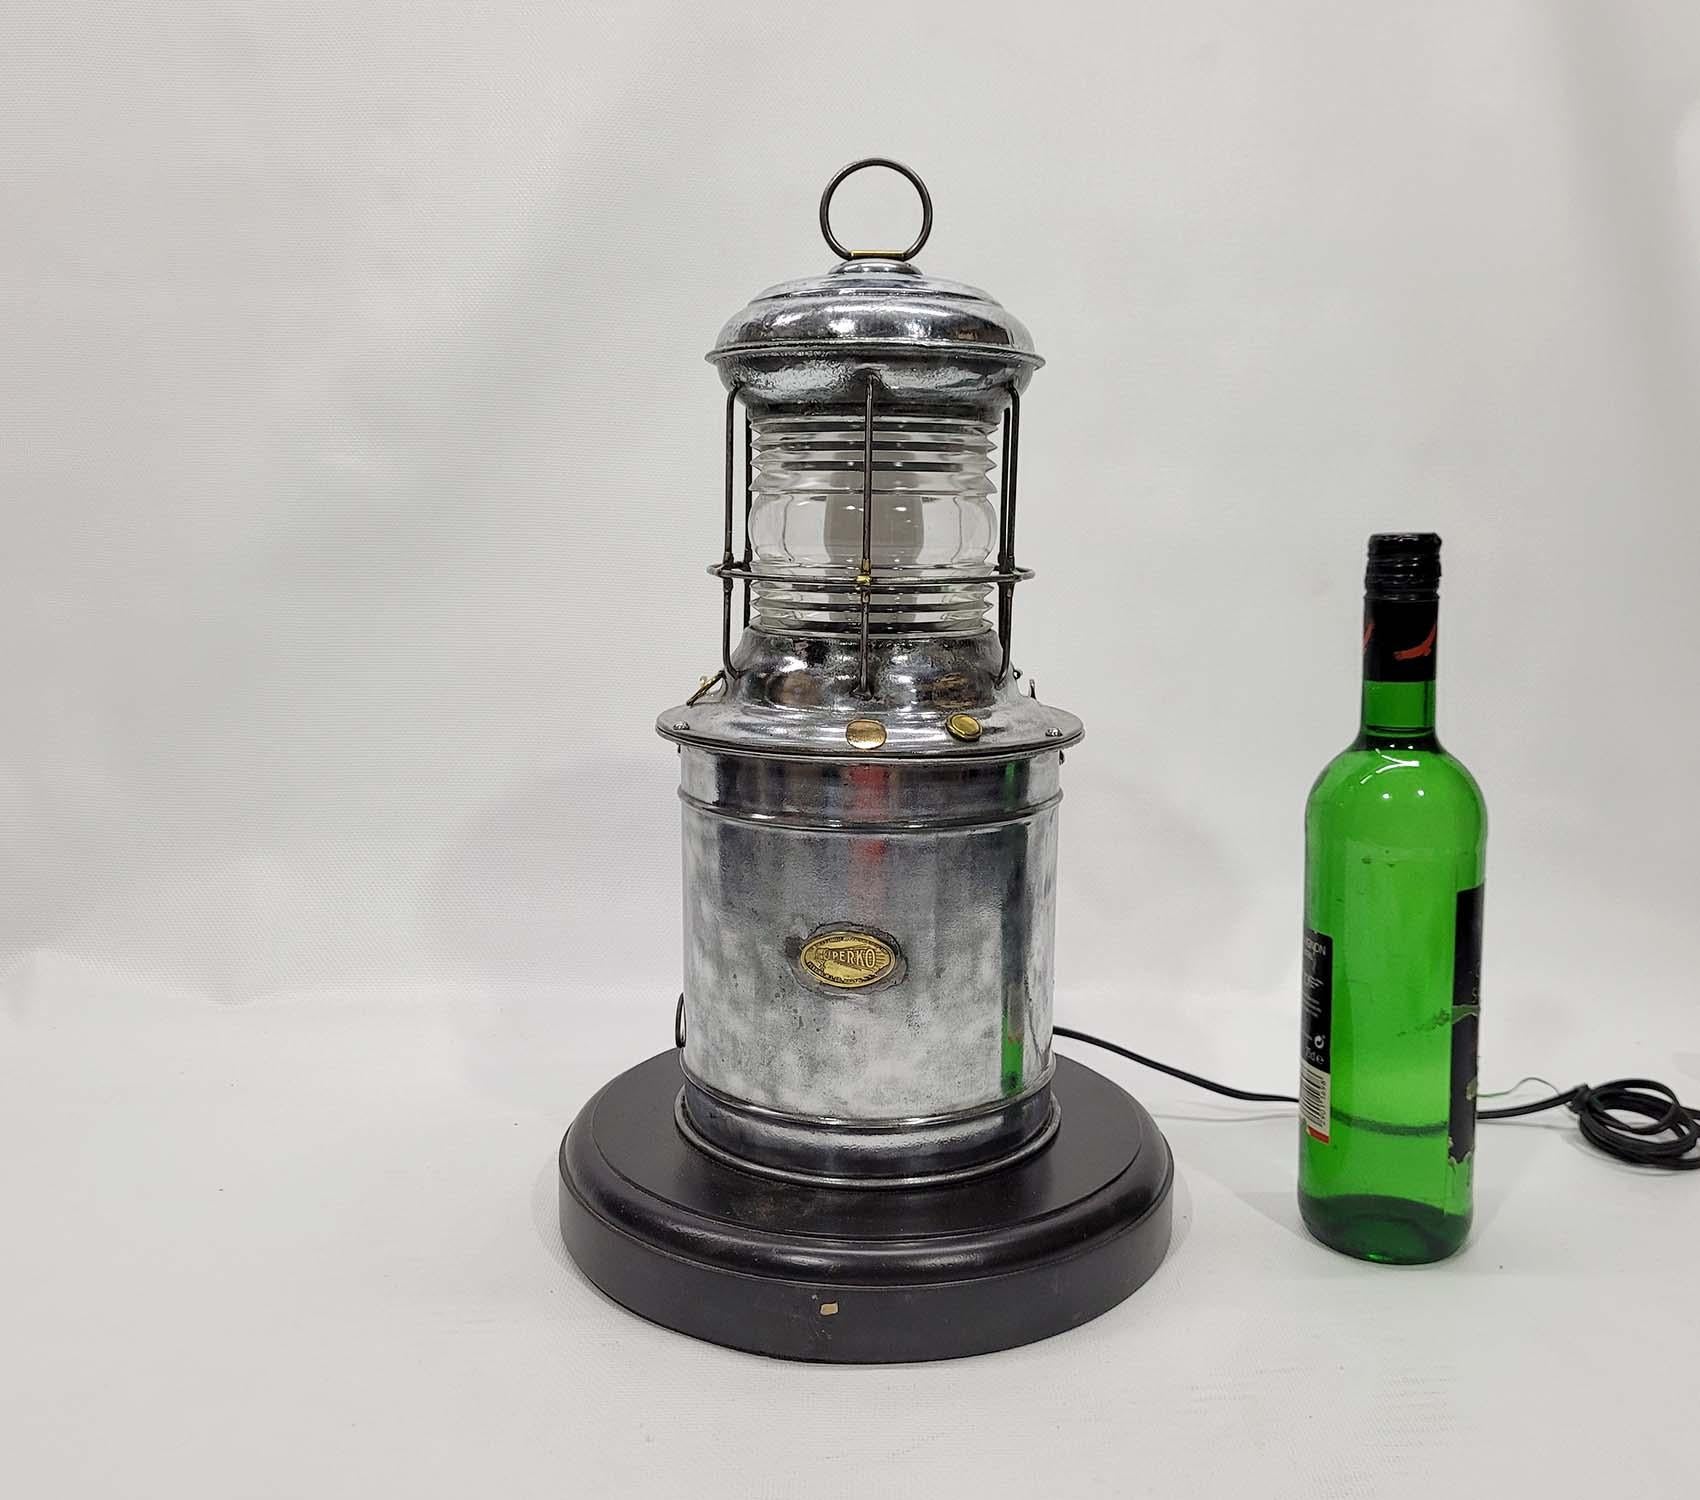 Marine-Leuchtfeuer aus poliertem Stahl von Perkins Marine Lamp Company aus Brooklyn, New York. Es handelt sich um ein batteriebetriebenes Notrufsignal. Es wurde mit einer Steckdose ausgestattet. Er wurde poliert und lackiert, was ihm einen tollen